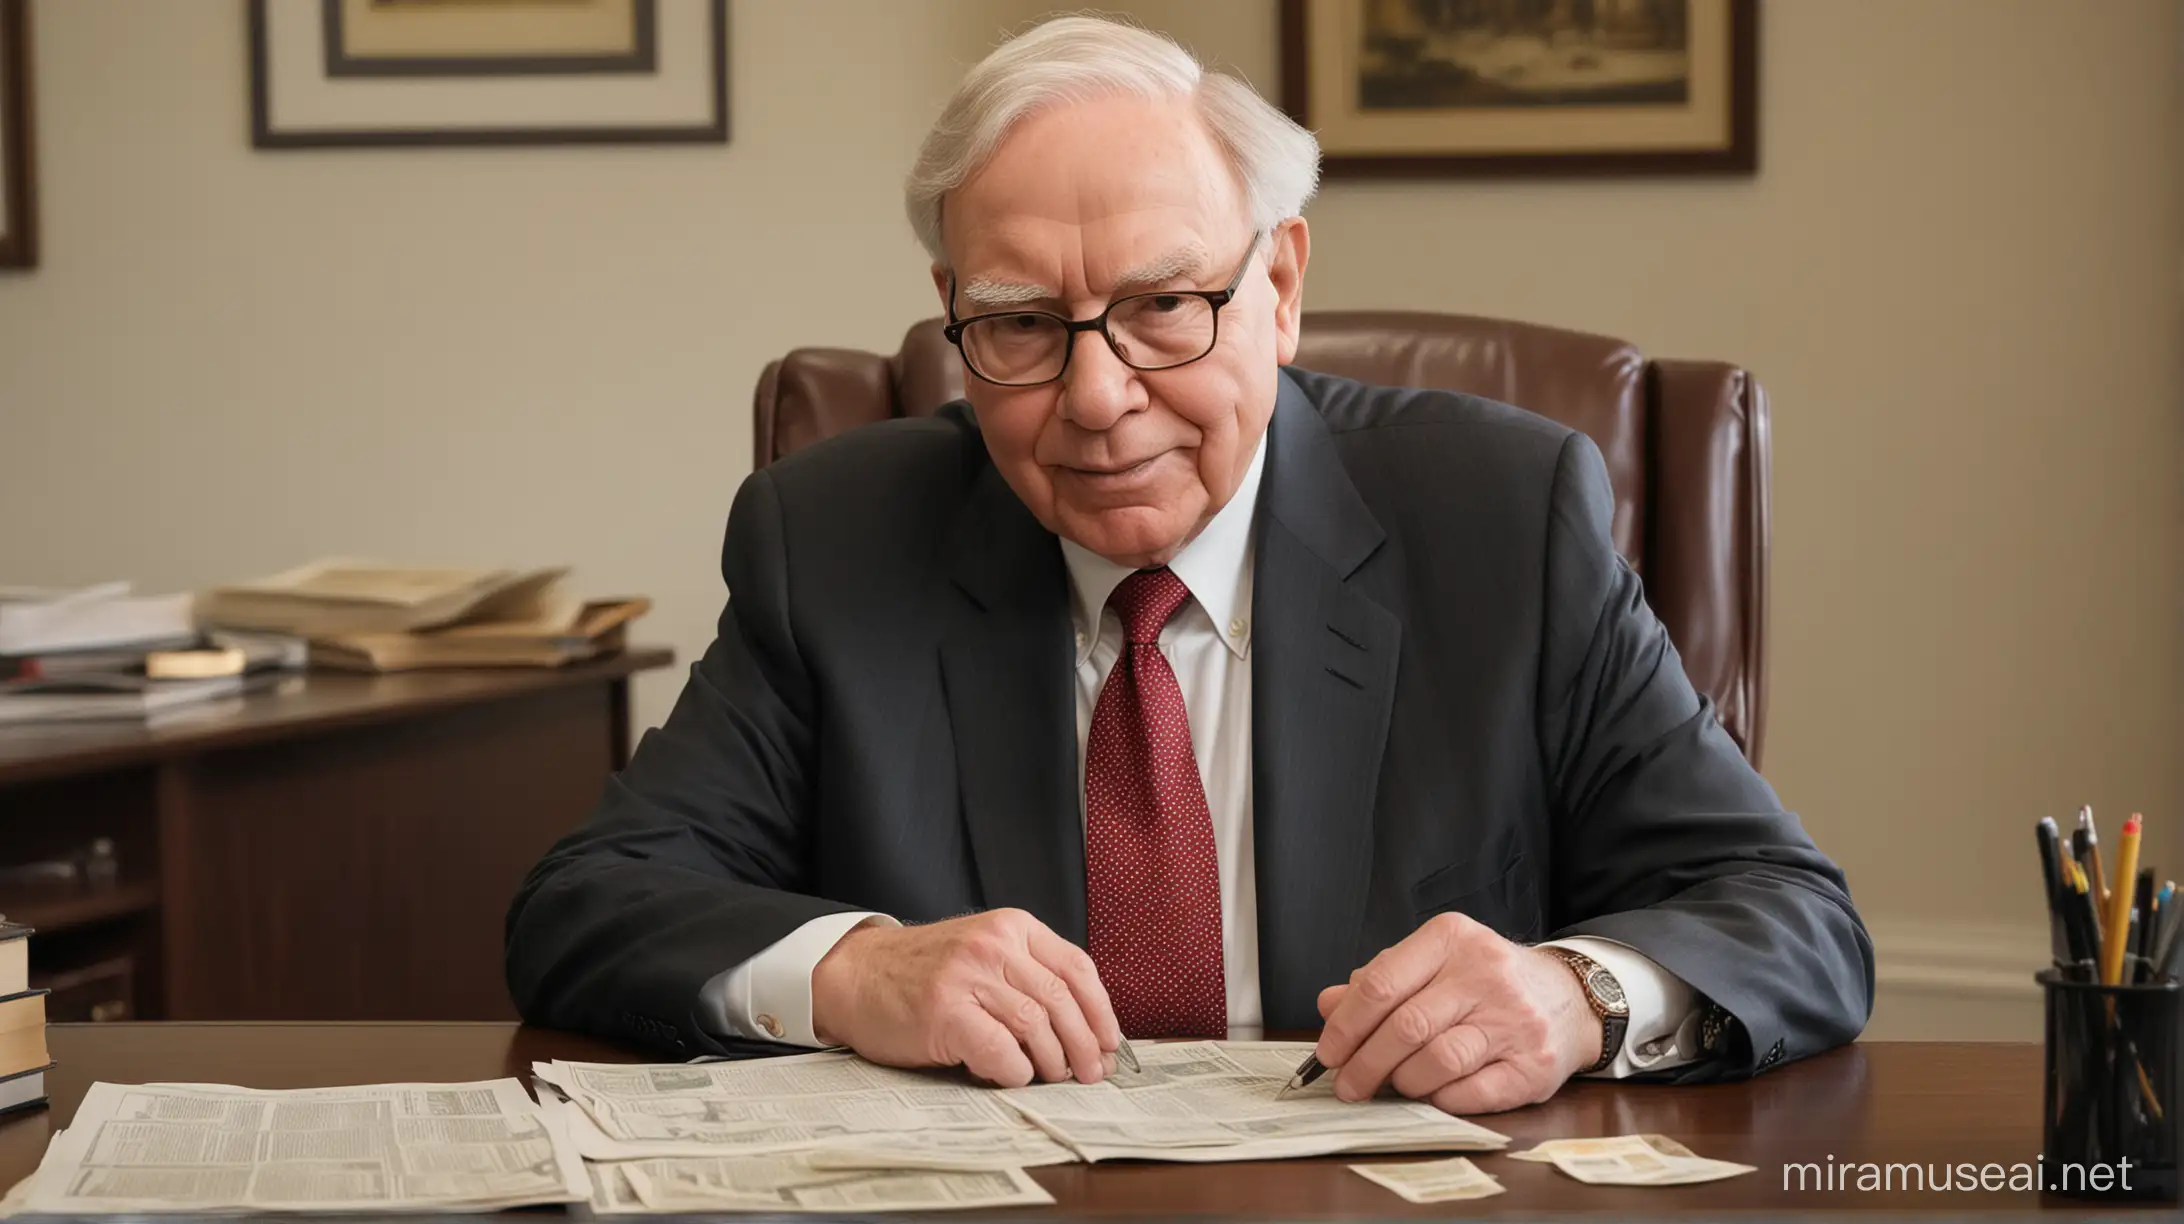 Warren Buffett Financial Wisdom Expert Advice for Wealth Creation